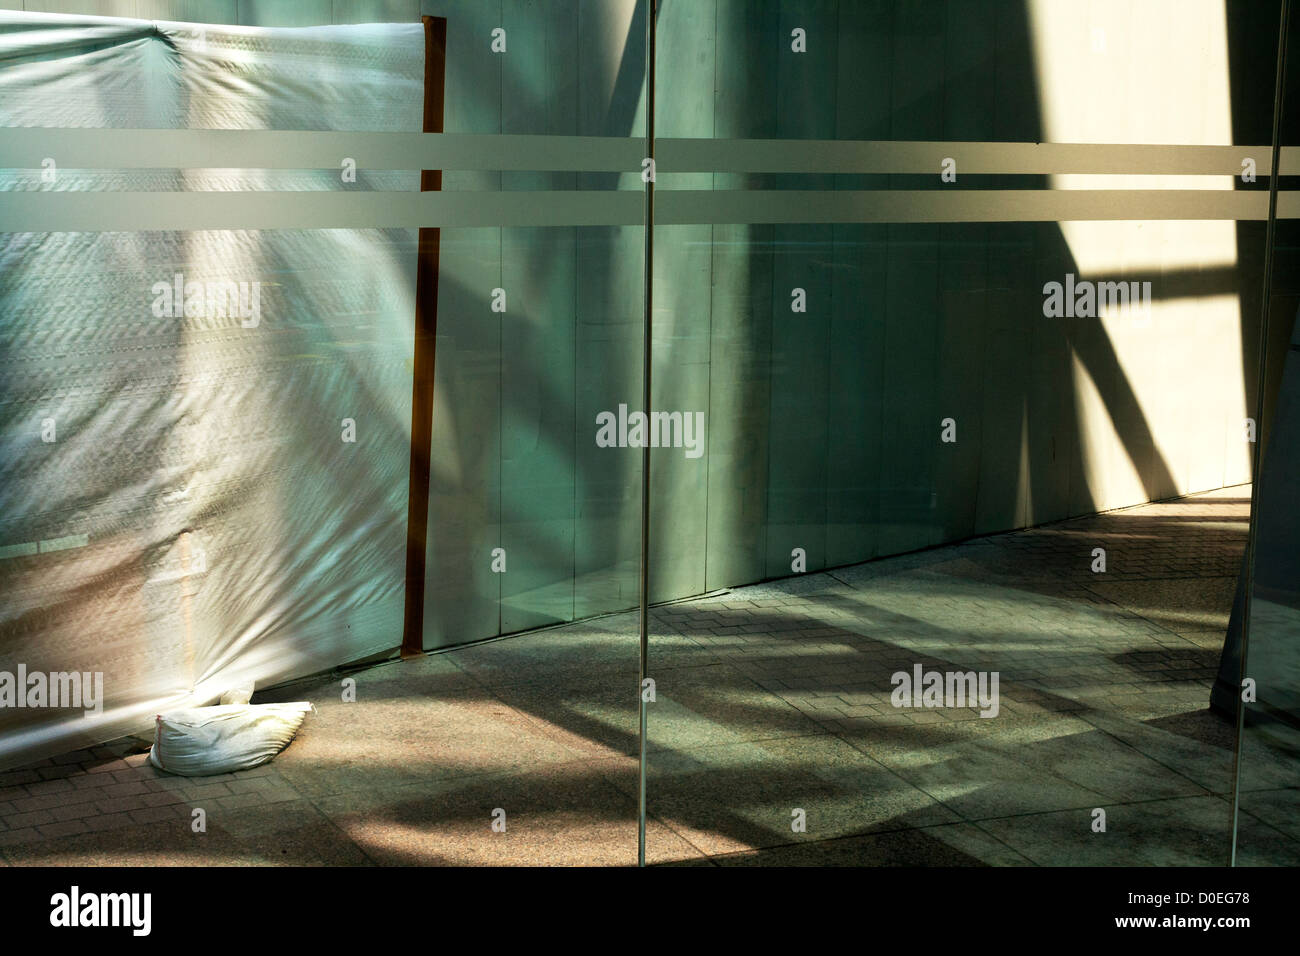 Porte en verre de l'entrée et la sortie, Singapour Banque D'Images